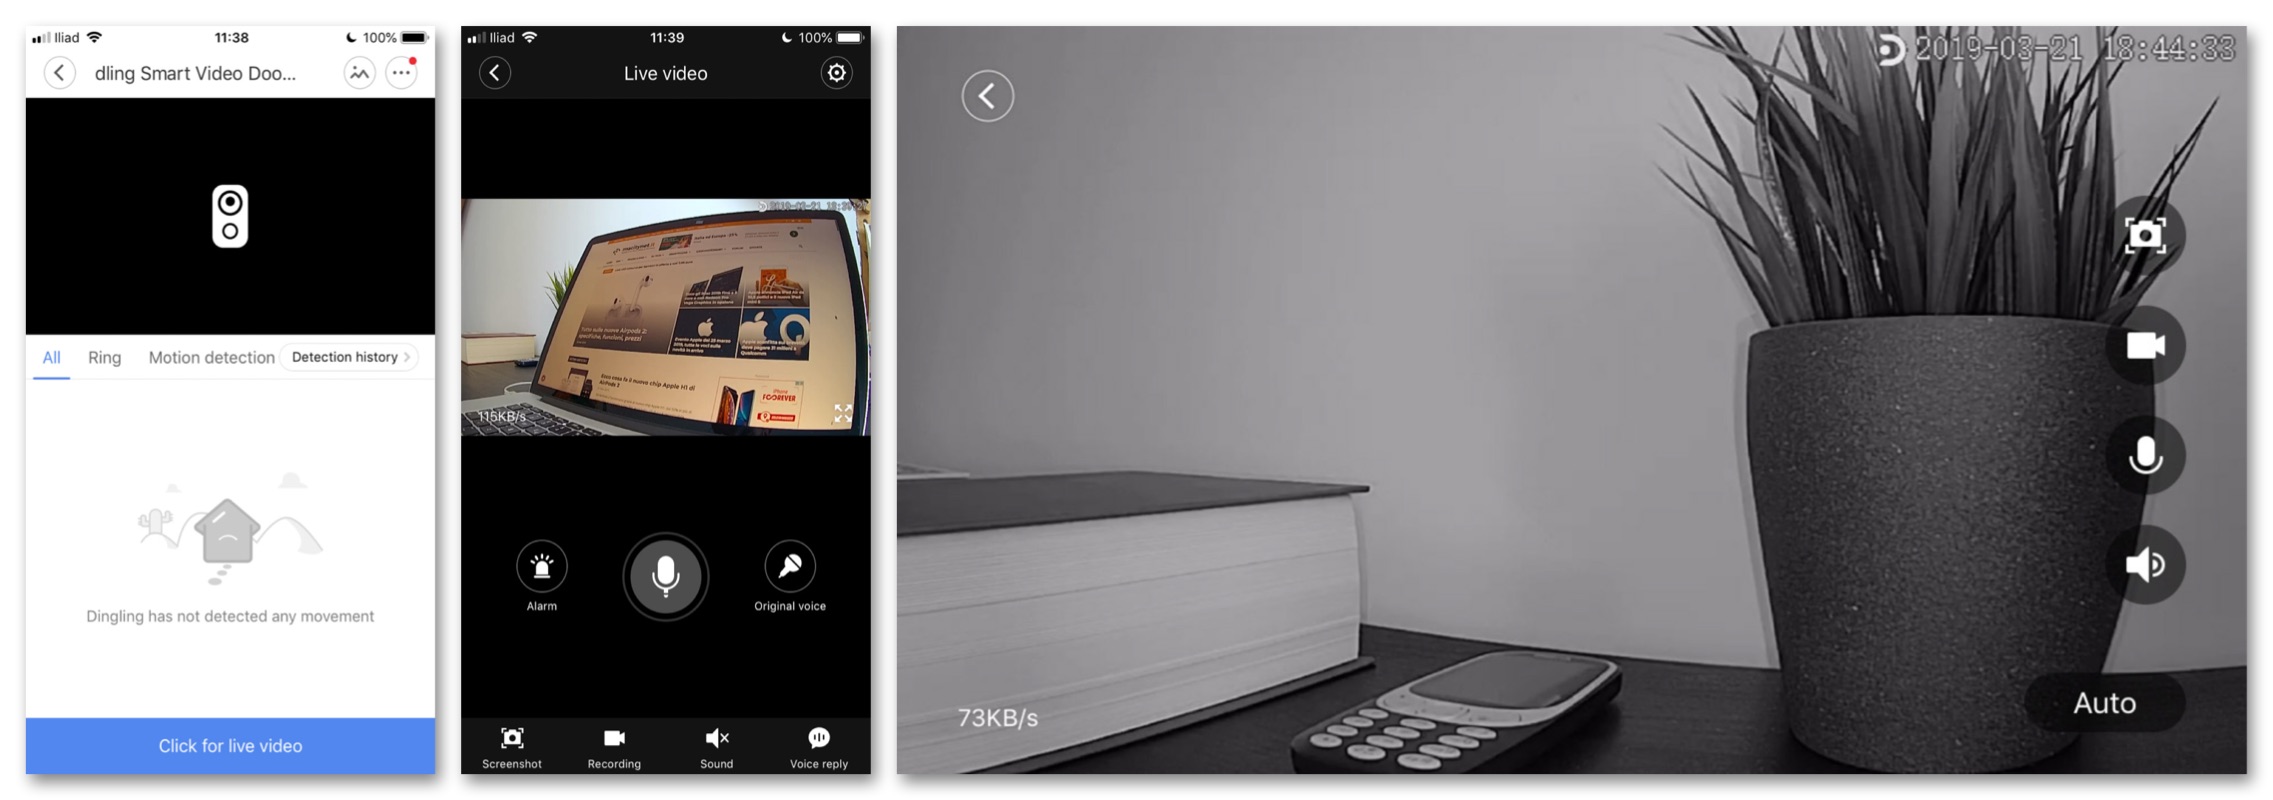 Recensione Xiaomi Mijia Video Doorbell, il campanello Smart con mille funzioni